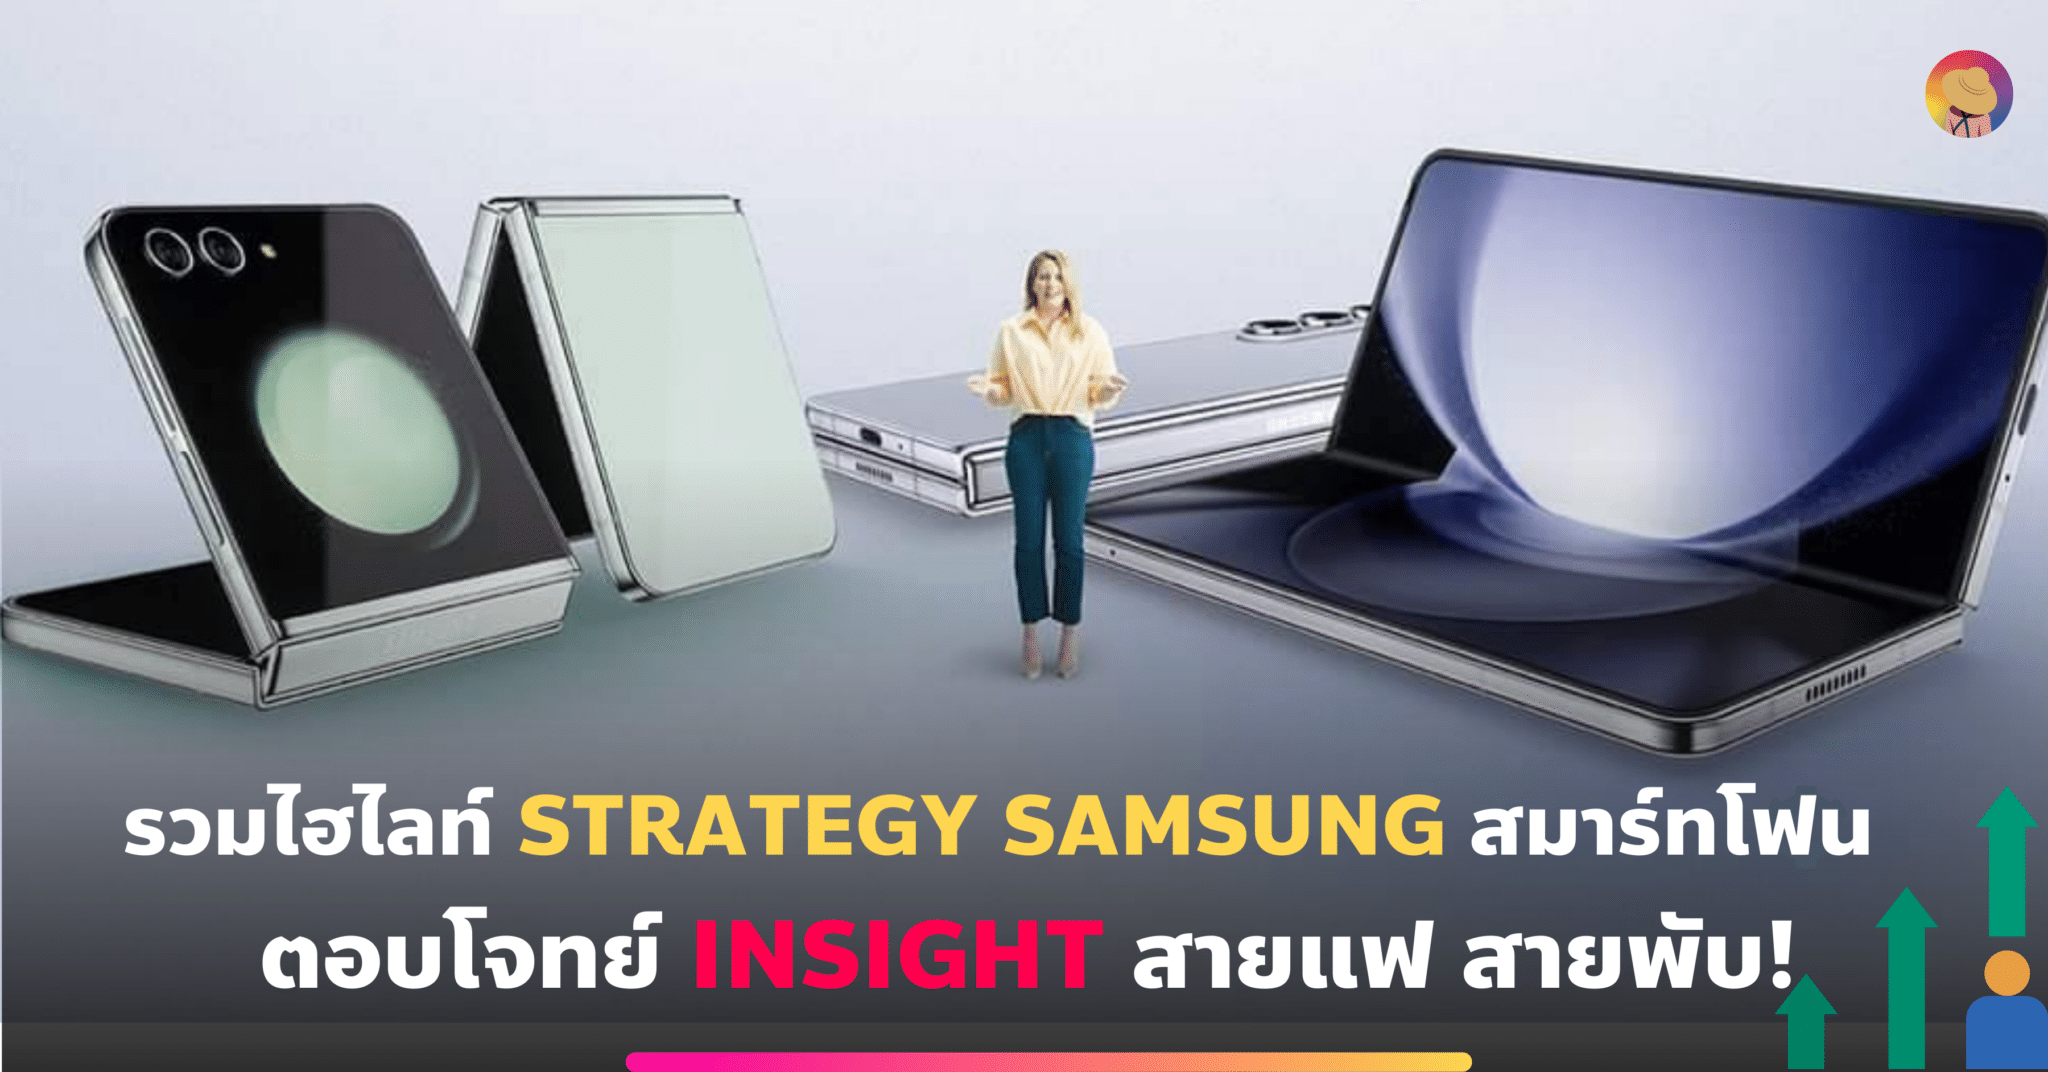 รวมไฮไลท์ Strategy Samsung สมาร์ทโฟนตอบโจทย์ Insight สายแฟ สายพับ